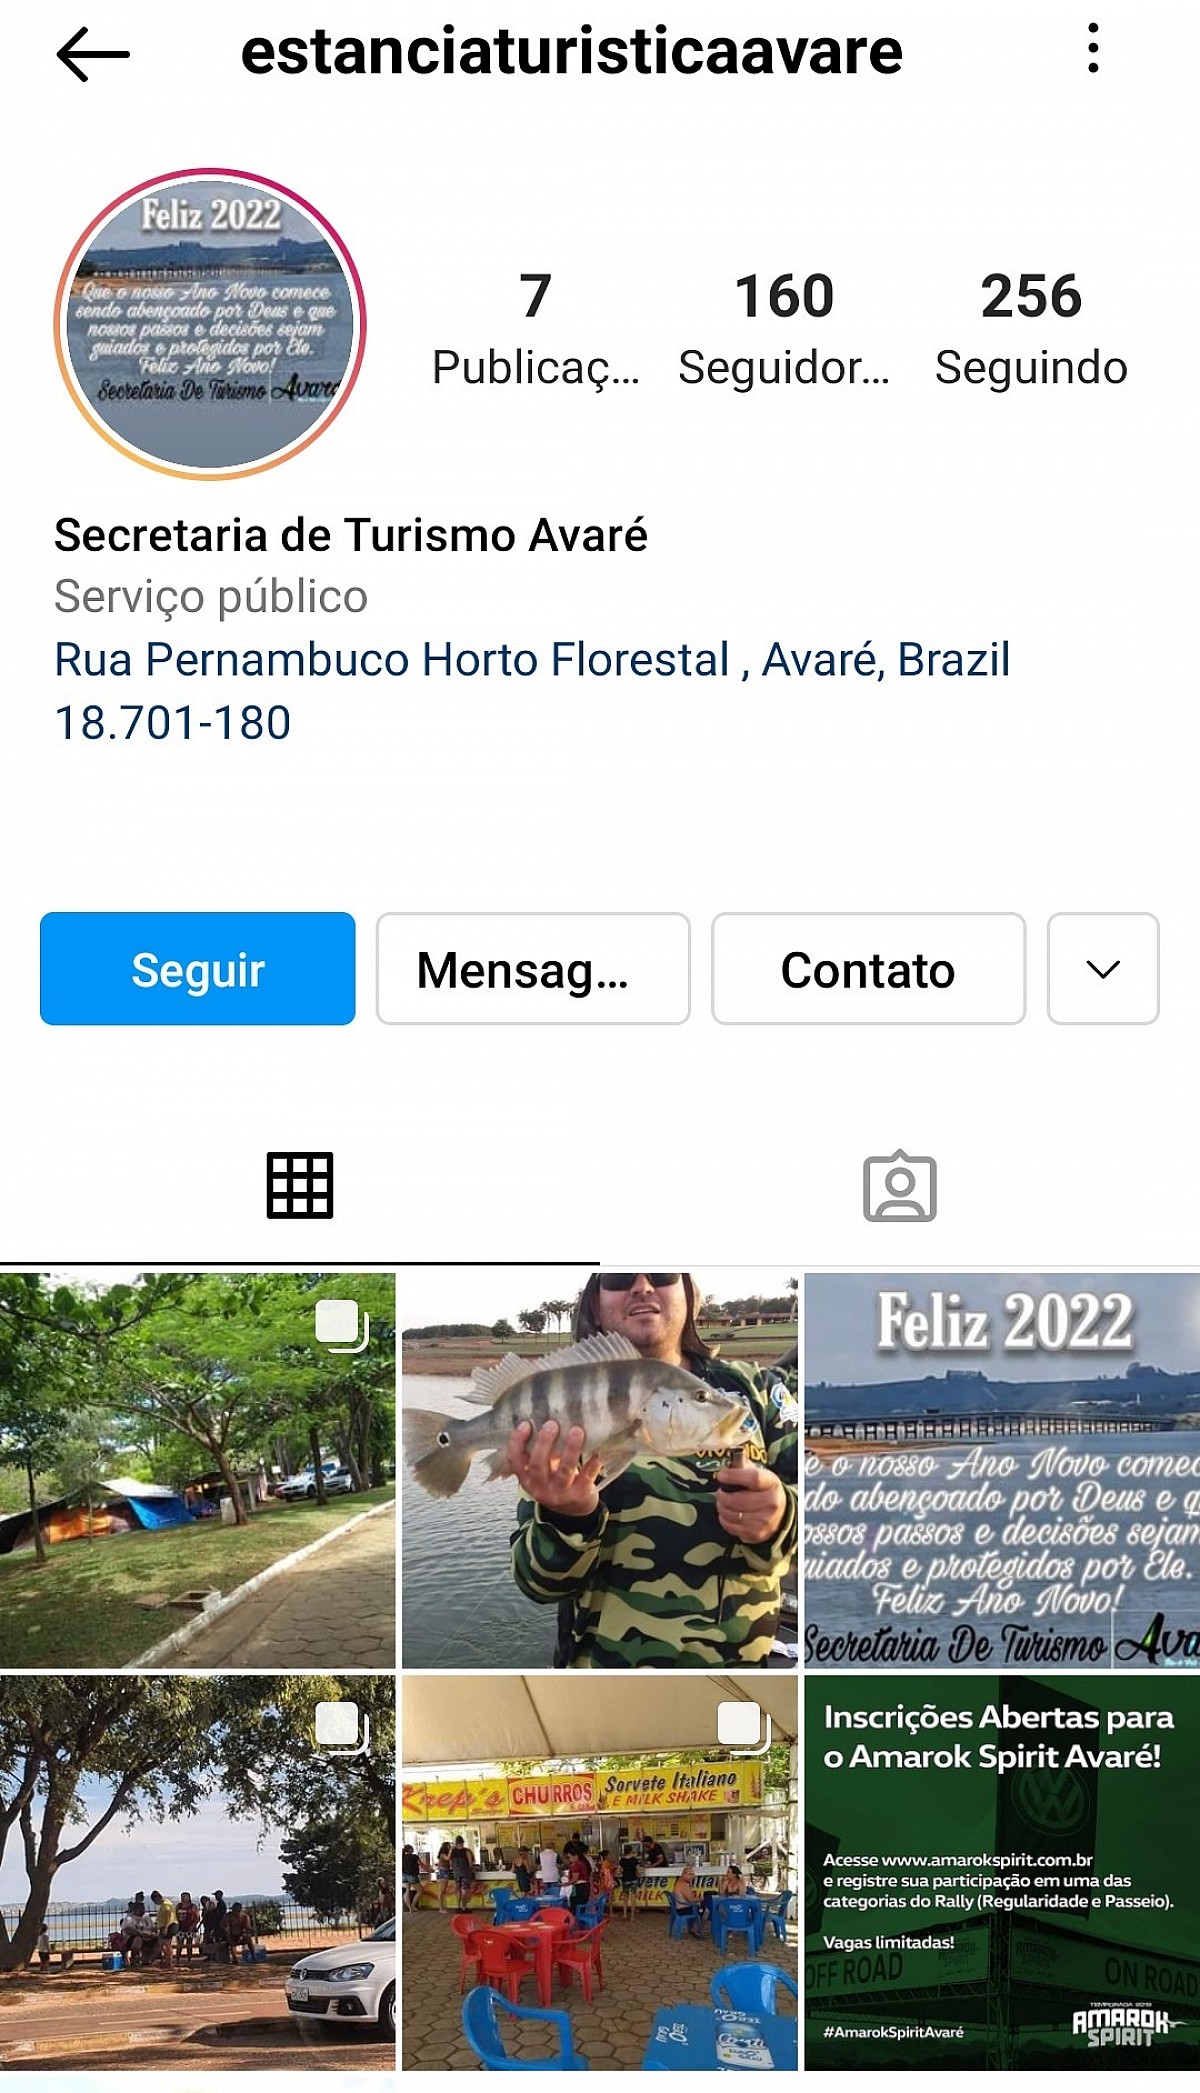 Perfil no Instagram divulga a Estância Turística de Avaré